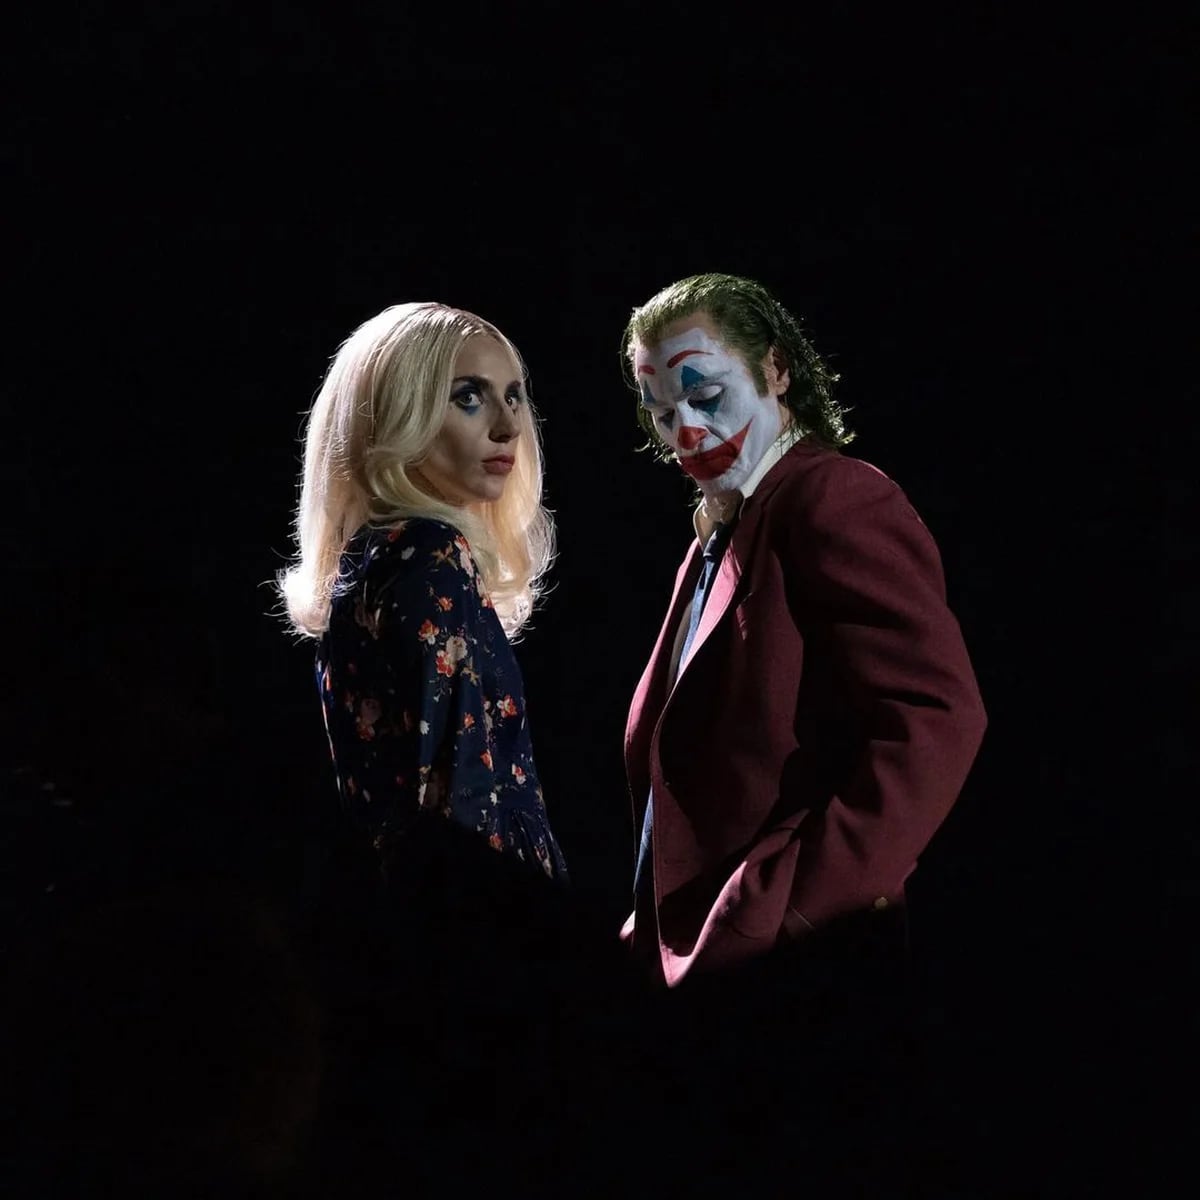 Phoenix y Gaga causan estragos en Gotham